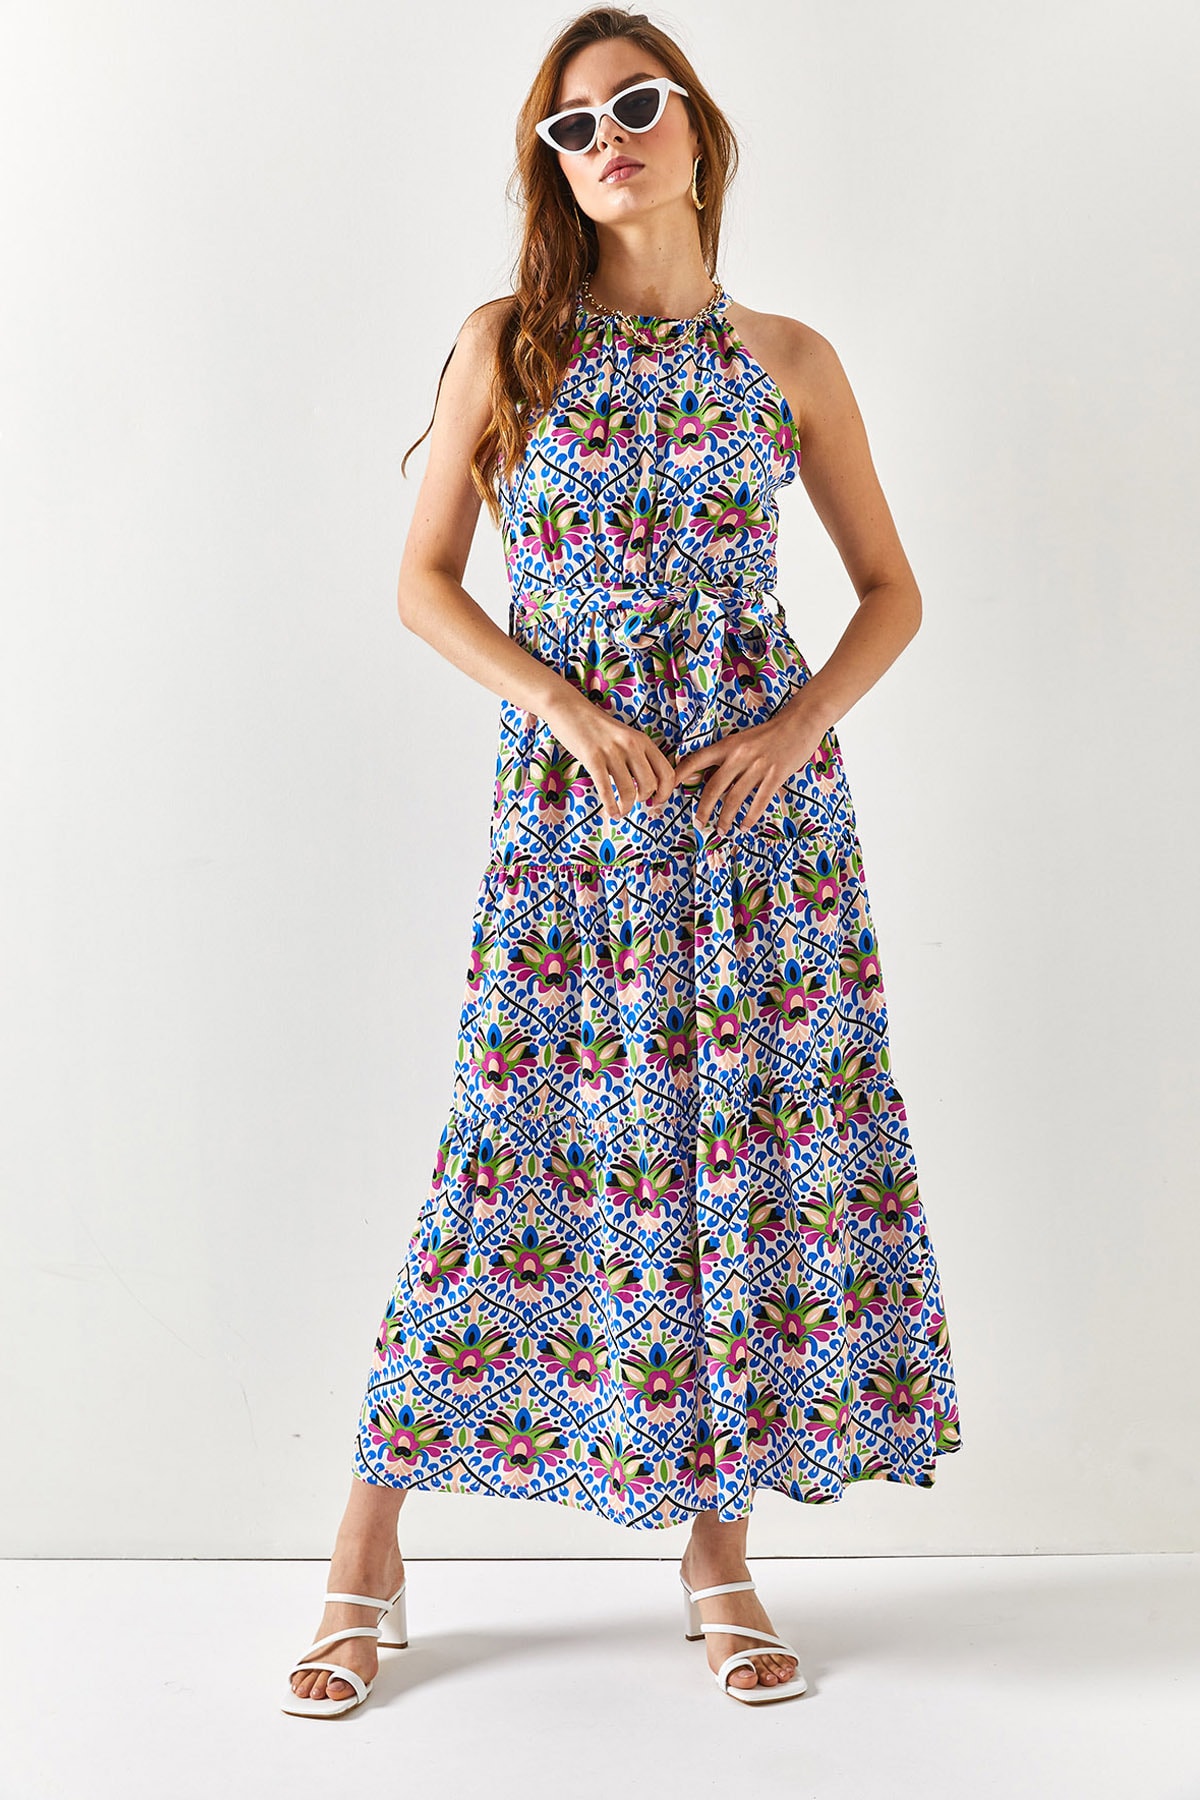 Женское синее платье из вискозы с воротником-халтером и поясом Saks Olalook, разноцветный женское вискозное платье травяного цвета с воротником мадонны и поясом olalook разноцветный